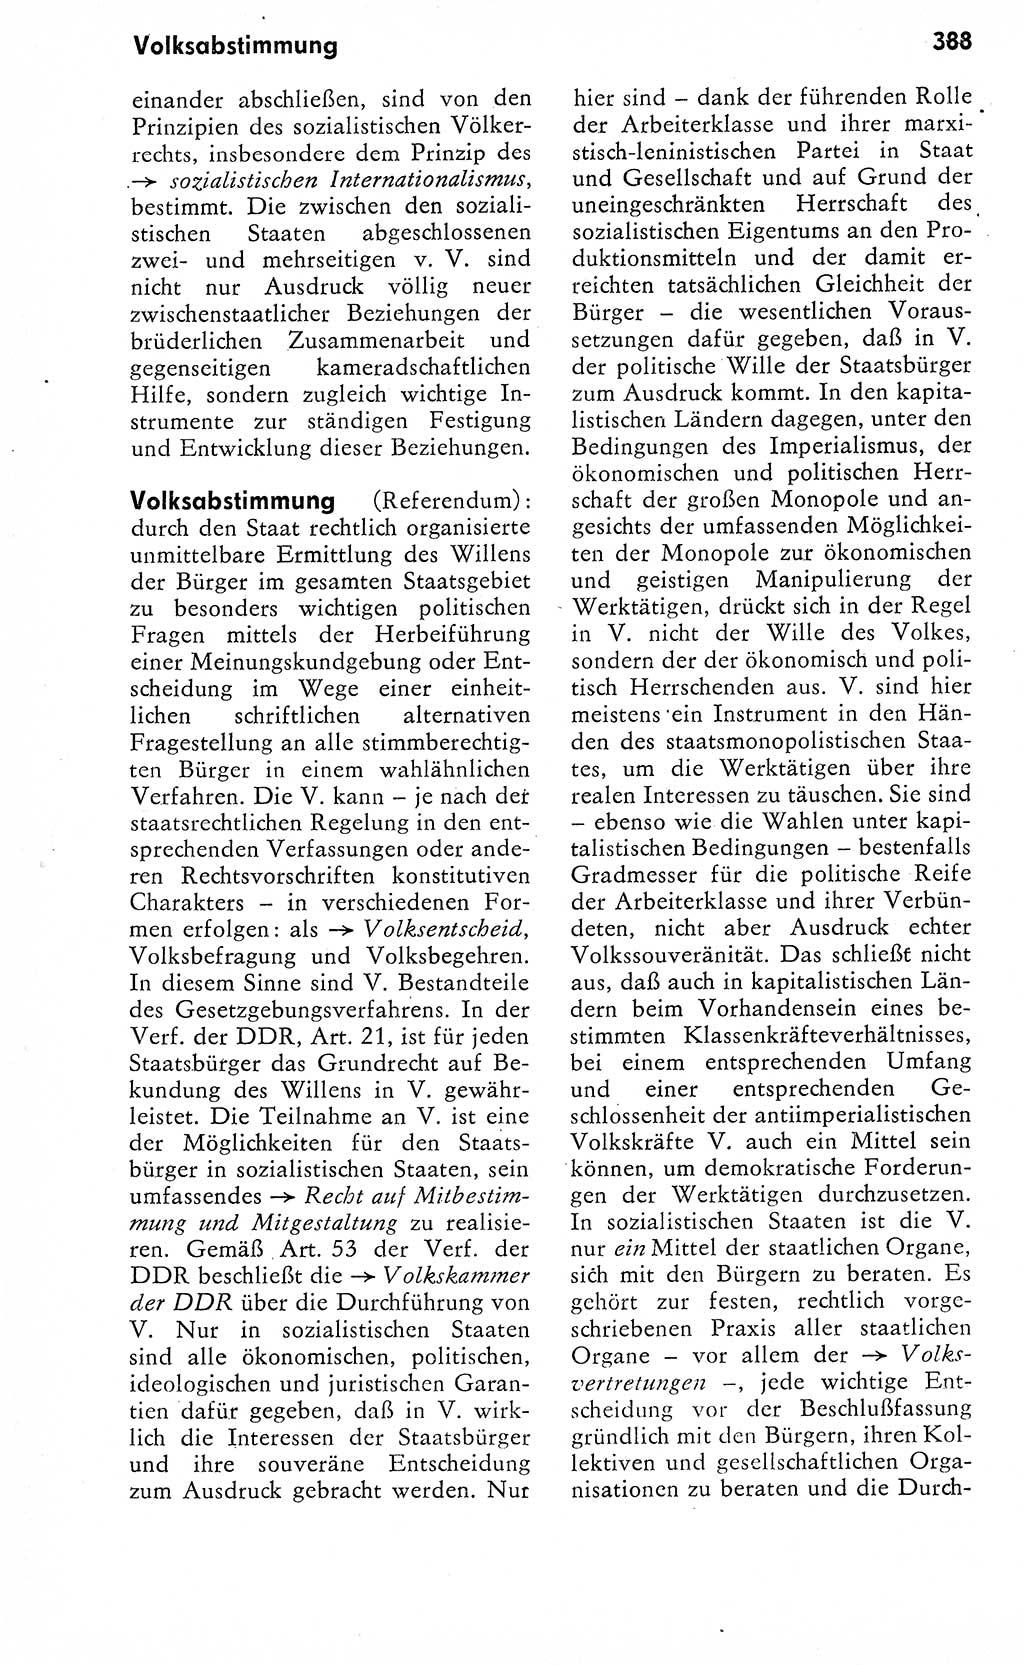 Wörterbuch zum sozialistischen Staat [Deutsche Demokratische Republik (DDR)] 1974, Seite 388 (Wb. soz. St. DDR 1974, S. 388)